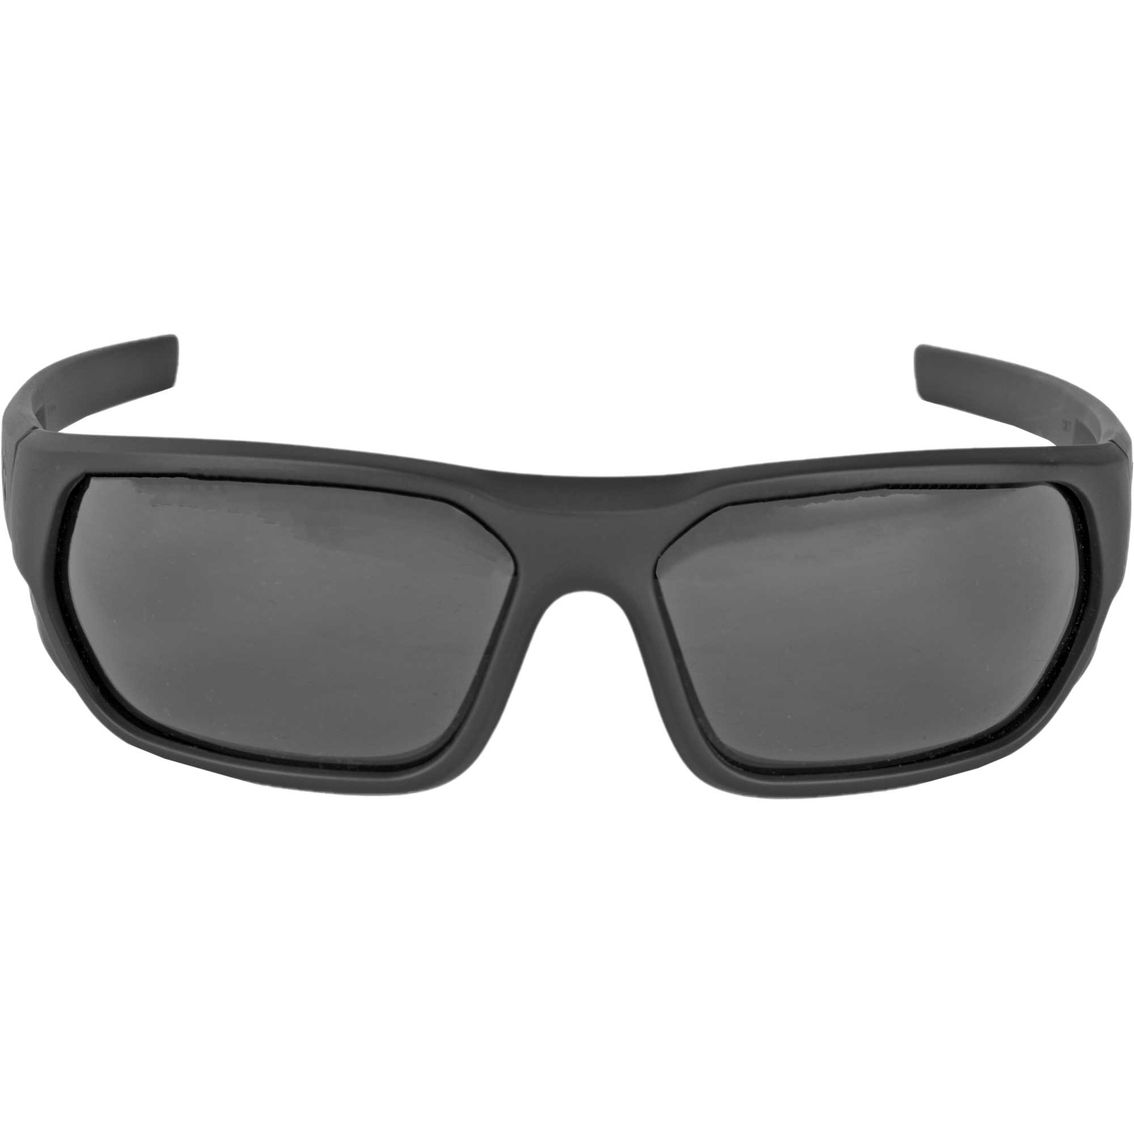 Magpul Radius Eyewear, Black Frame And Gray Lens | Eye & Hearing ...